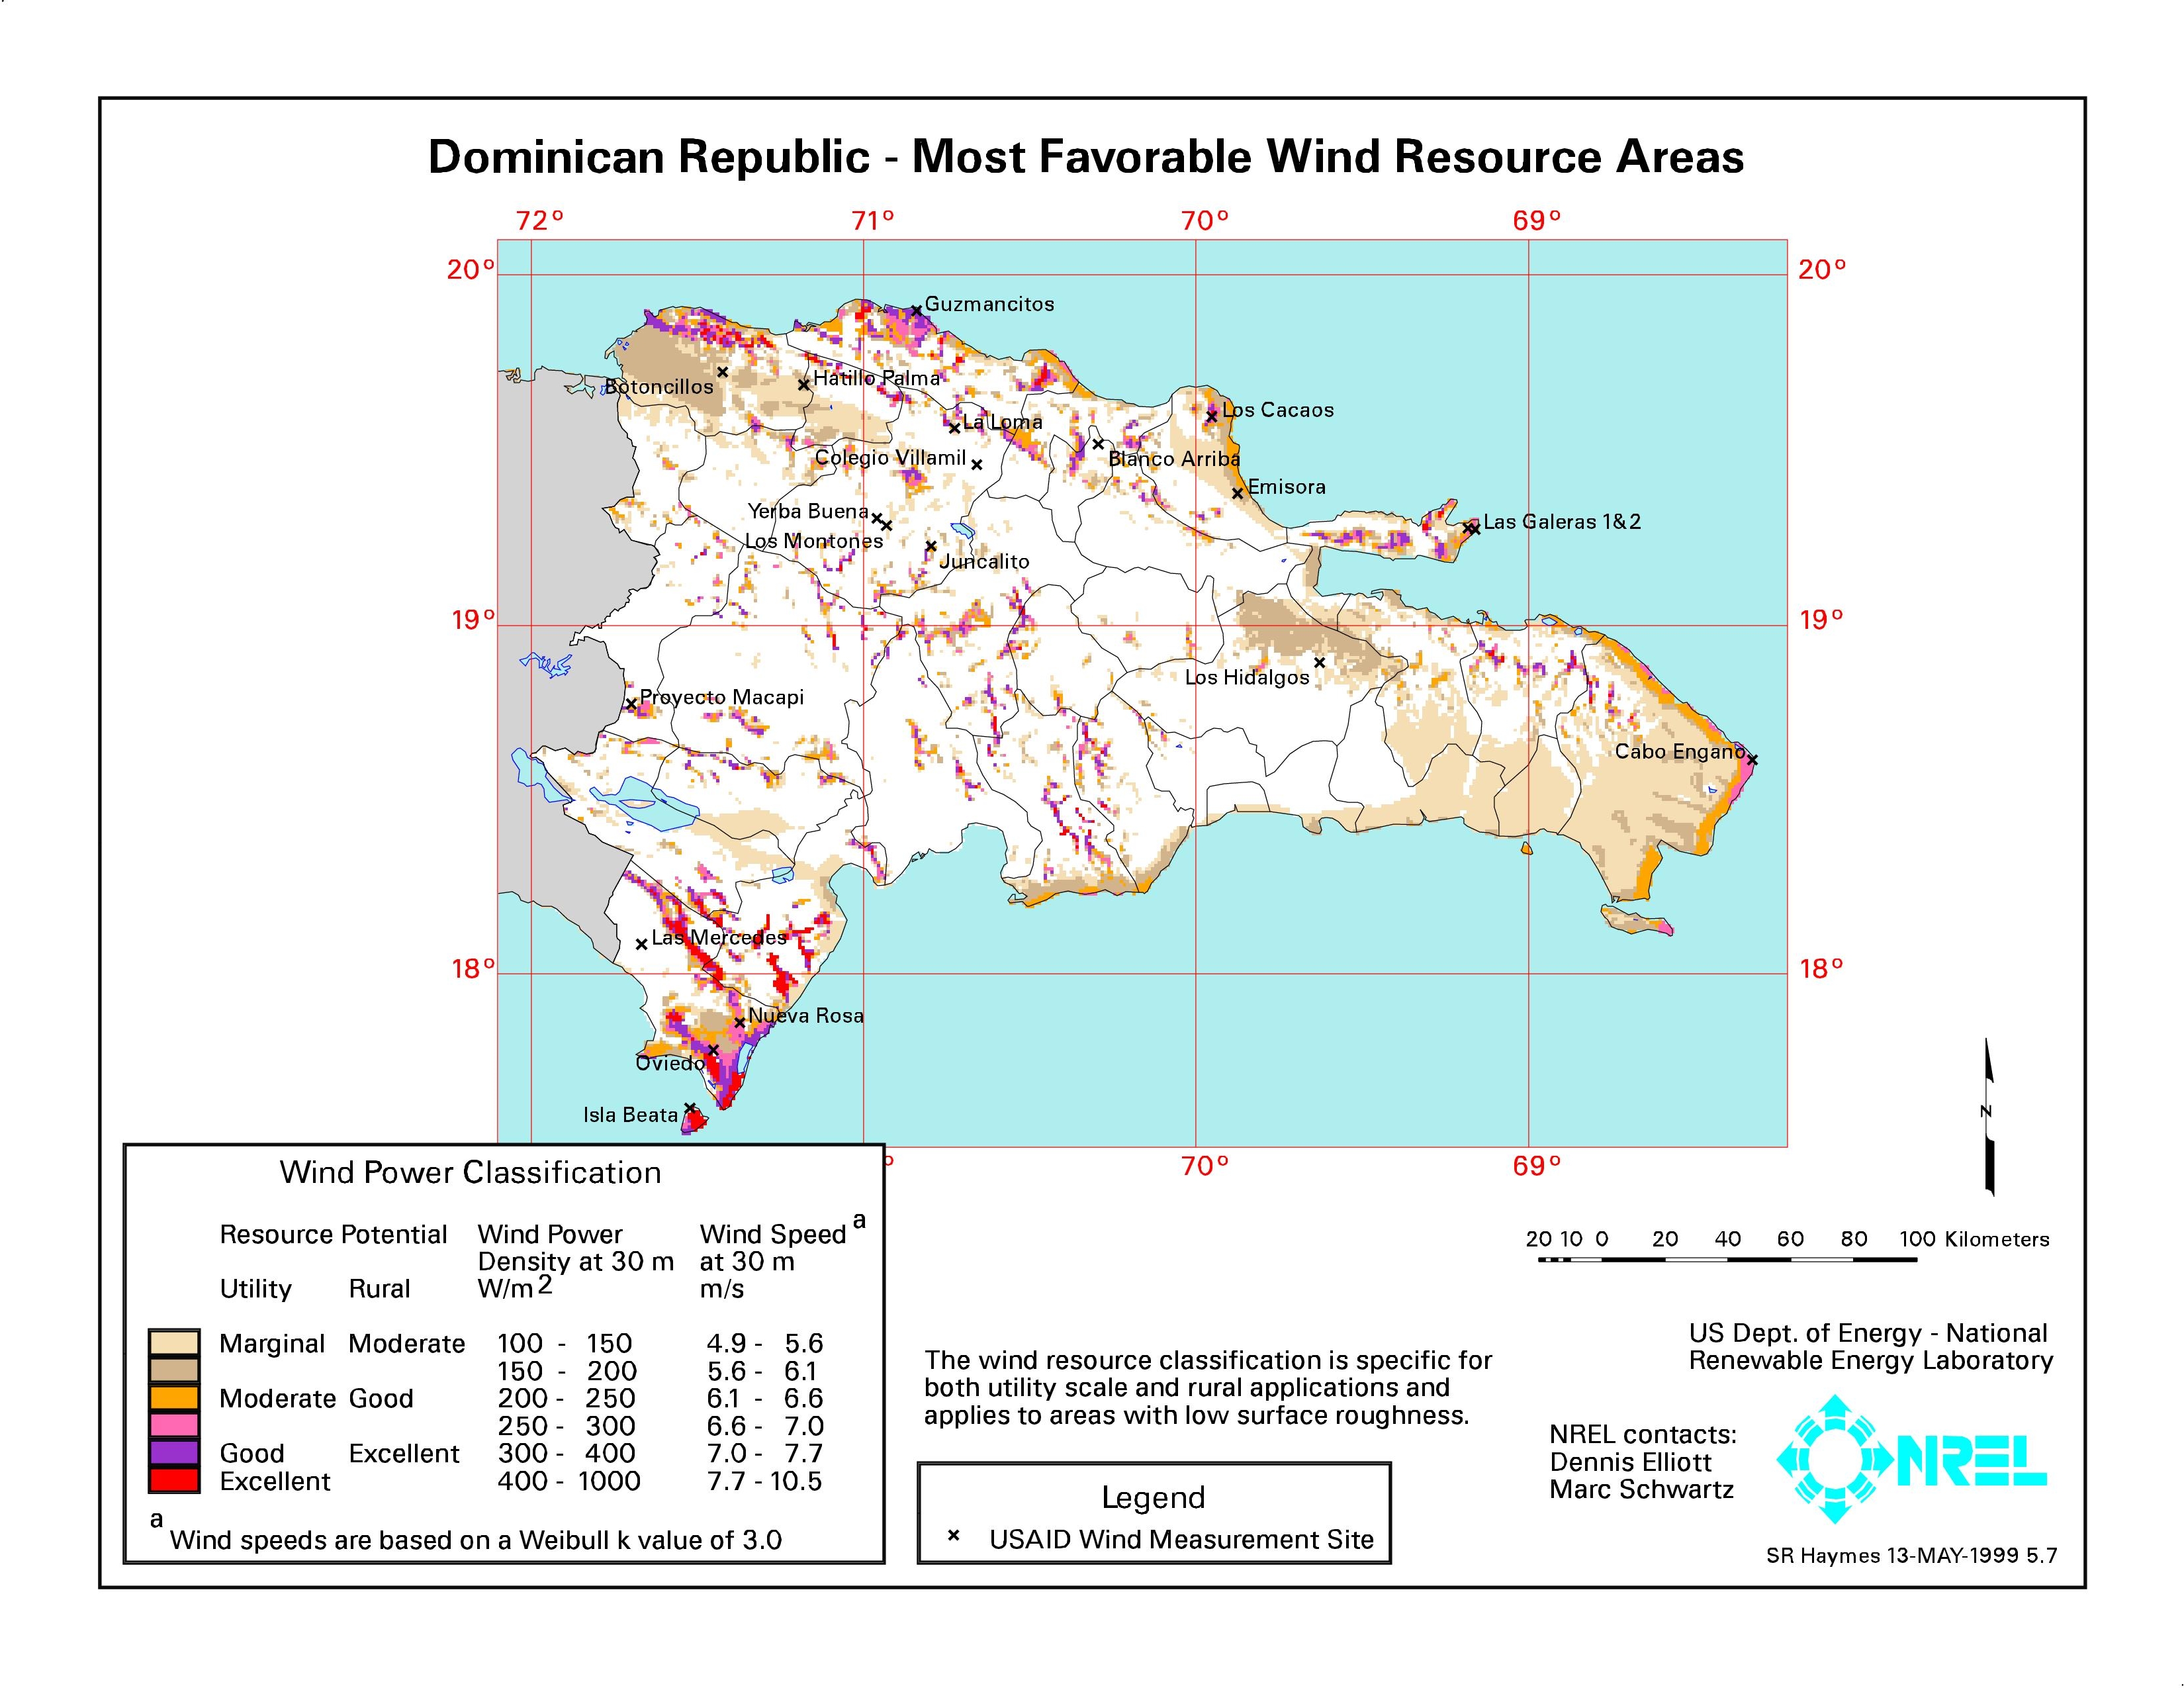 El 85% energía en República Dominicana puede ser obtenida de energías renovables